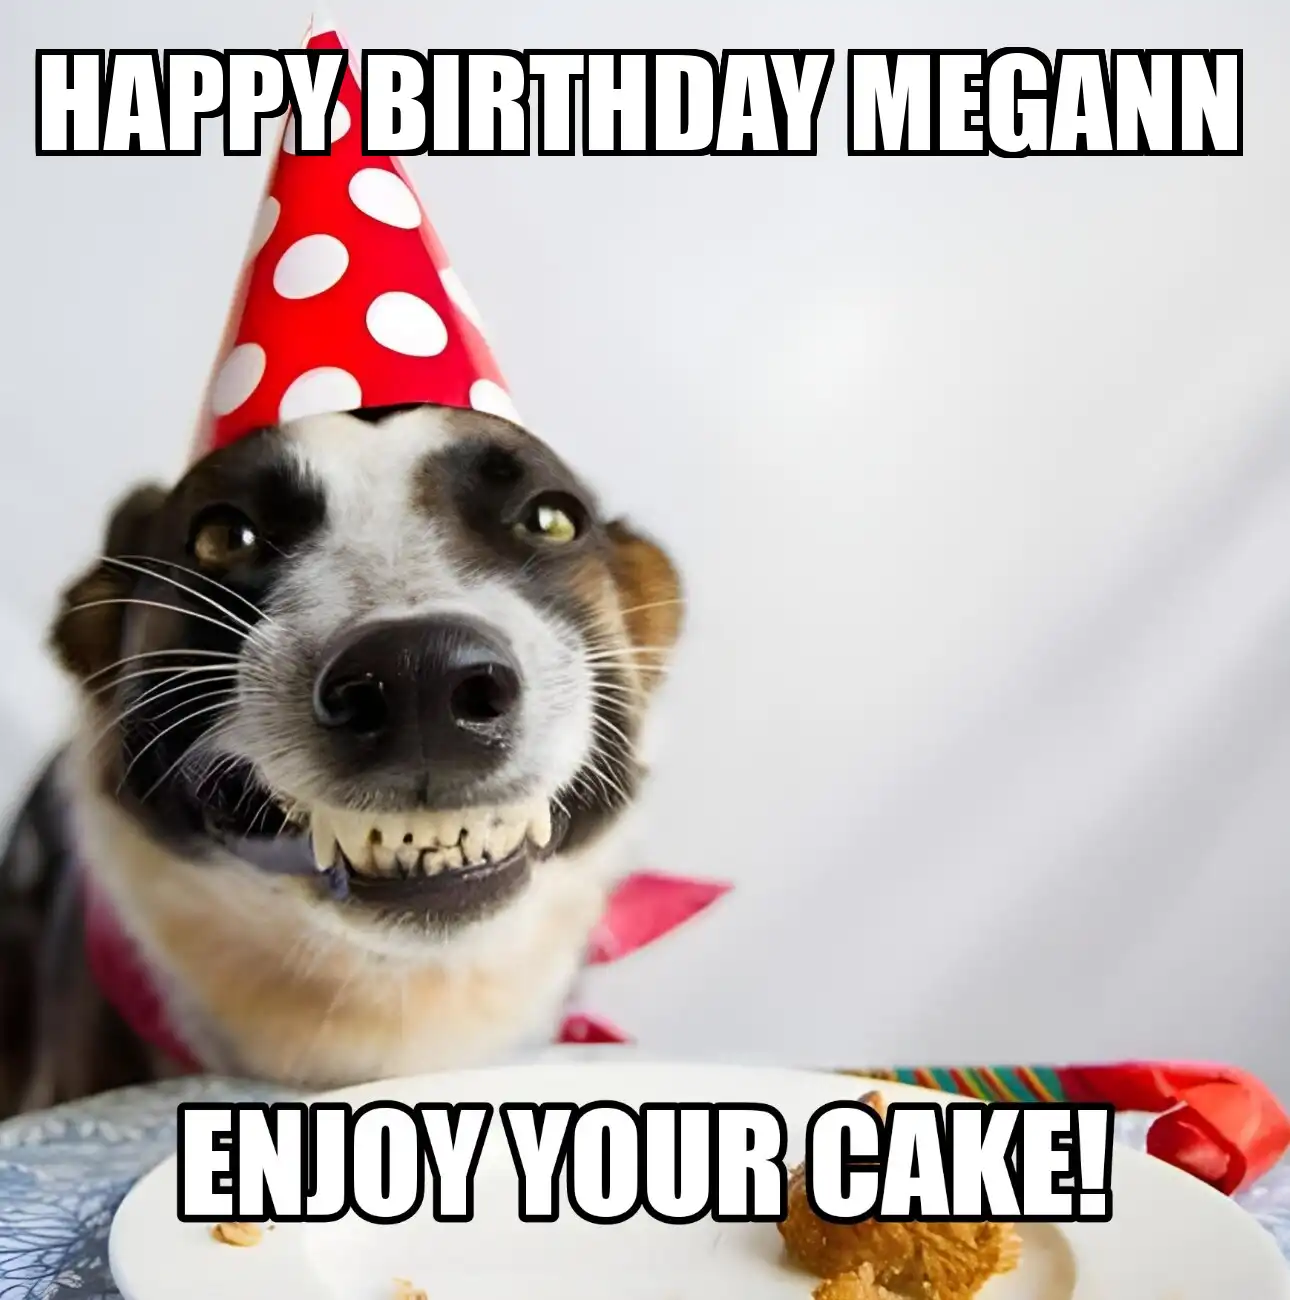 Happy Birthday Megann Enjoy Your Cake Dog Meme